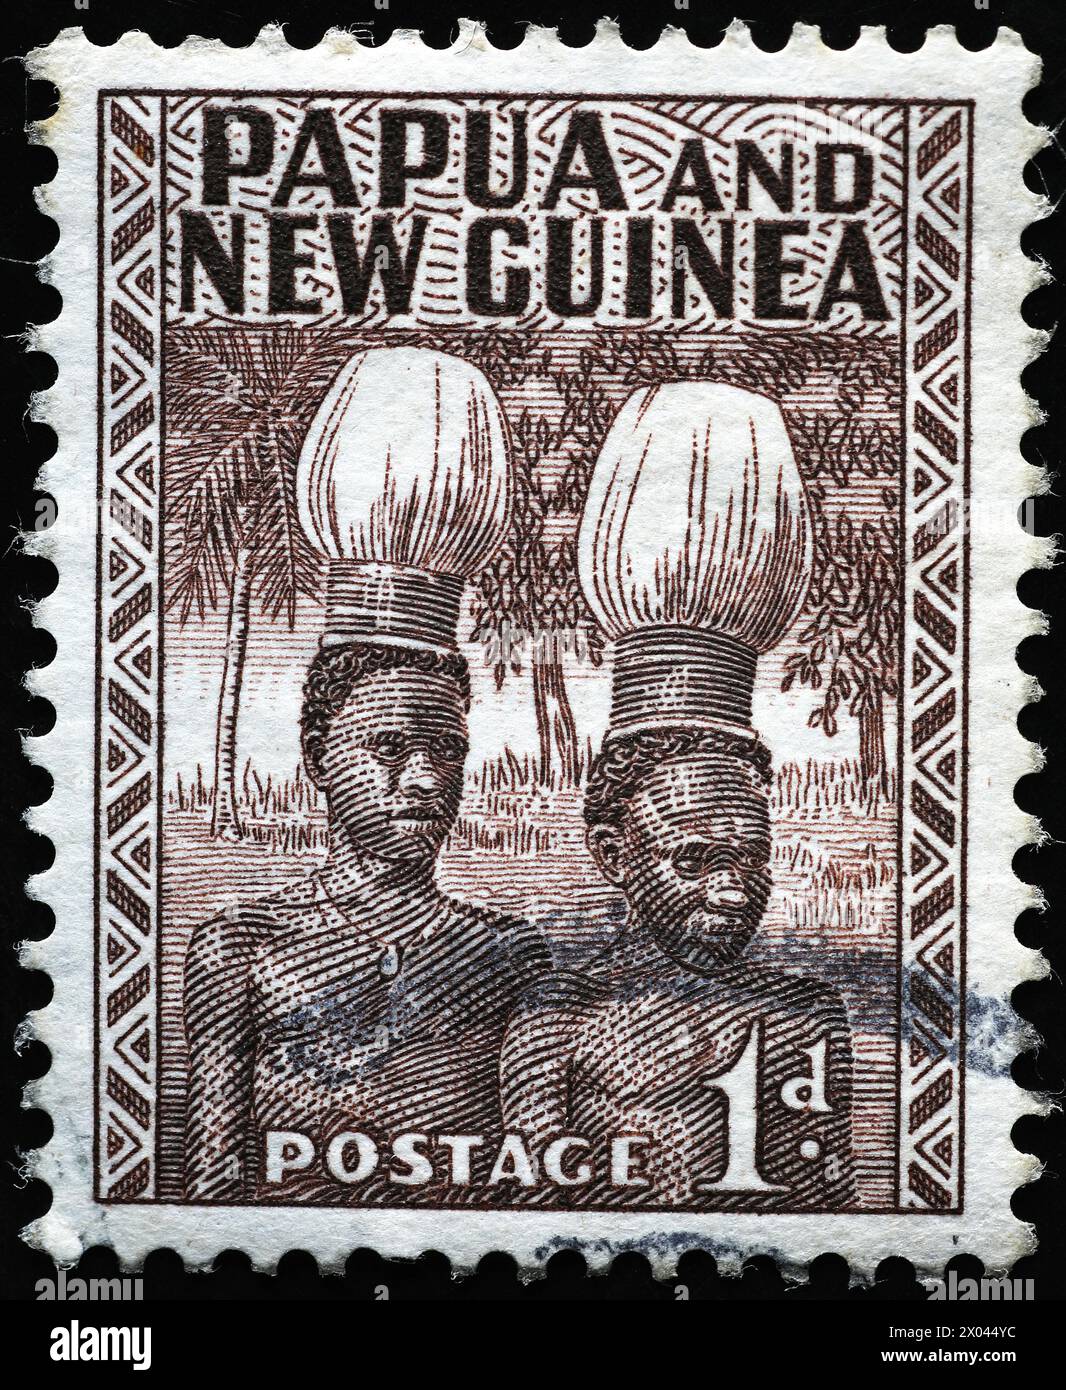 Natifs de Papouasie-Nouvelle-Guinée sur timbre vintage Banque D'Images